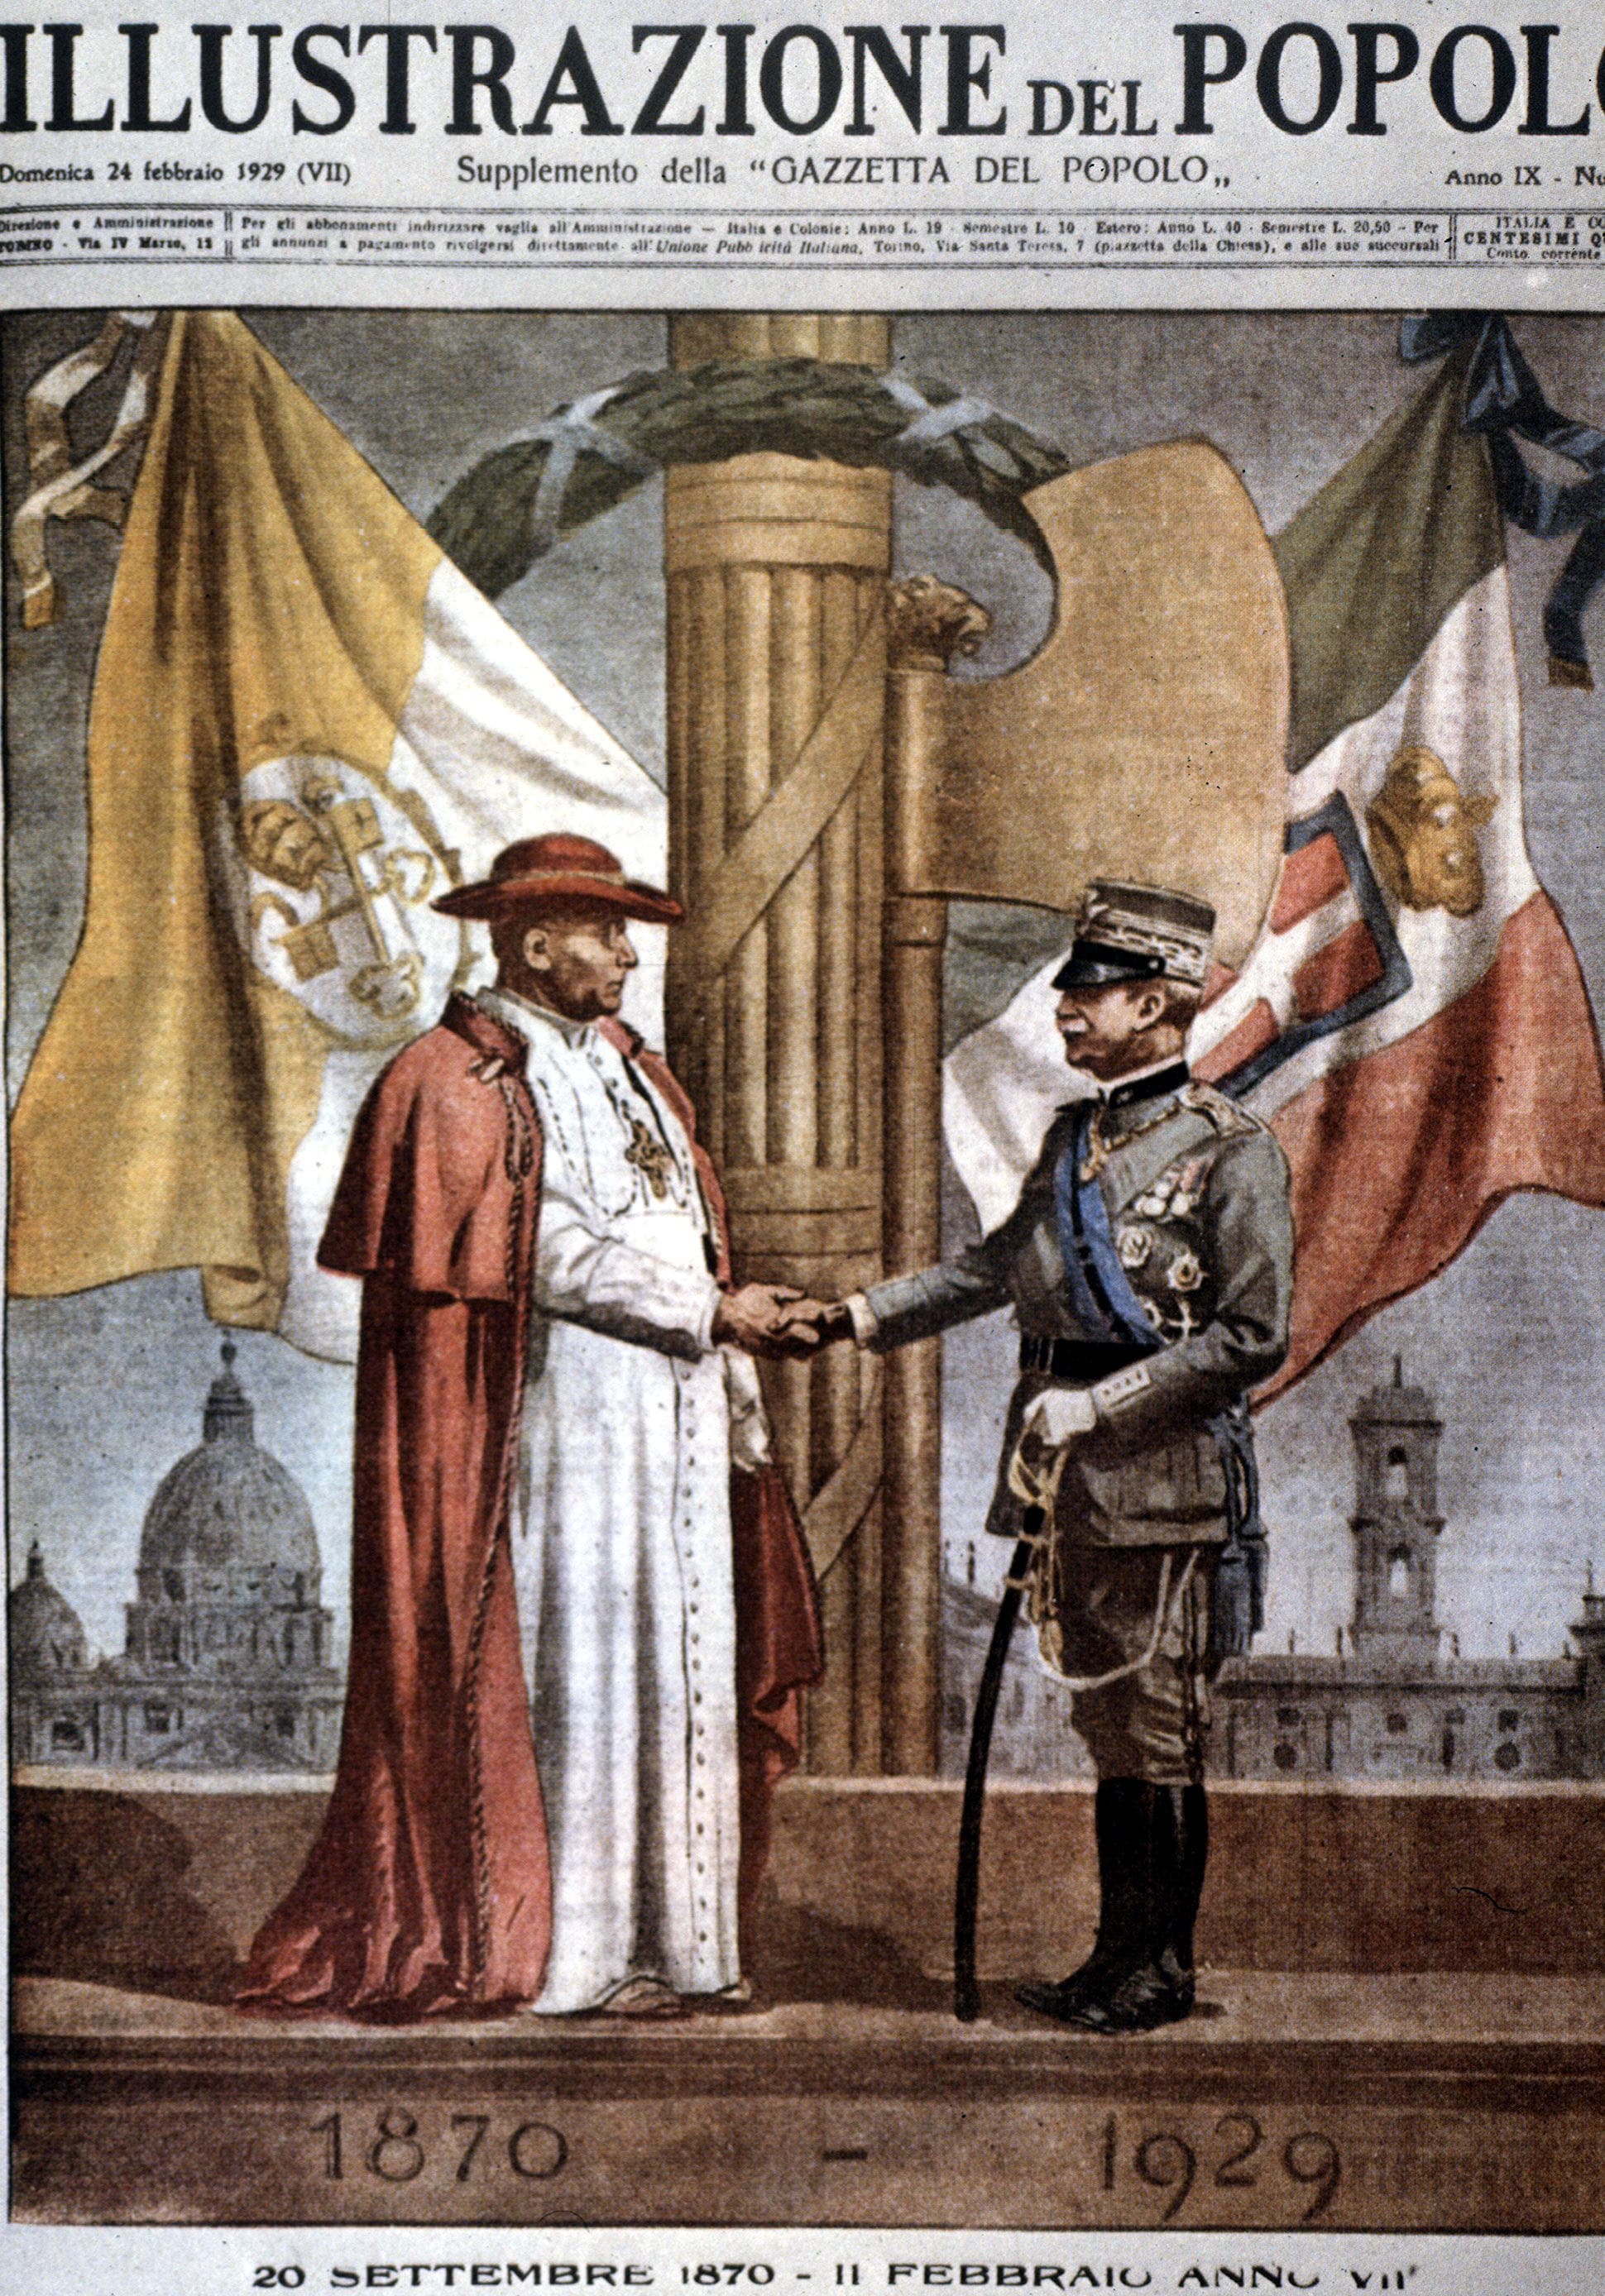 Illustrazione commemorativa in occasione degli accordi, che ritrae il papa Pio XI e il re Vittorio Emanuele III